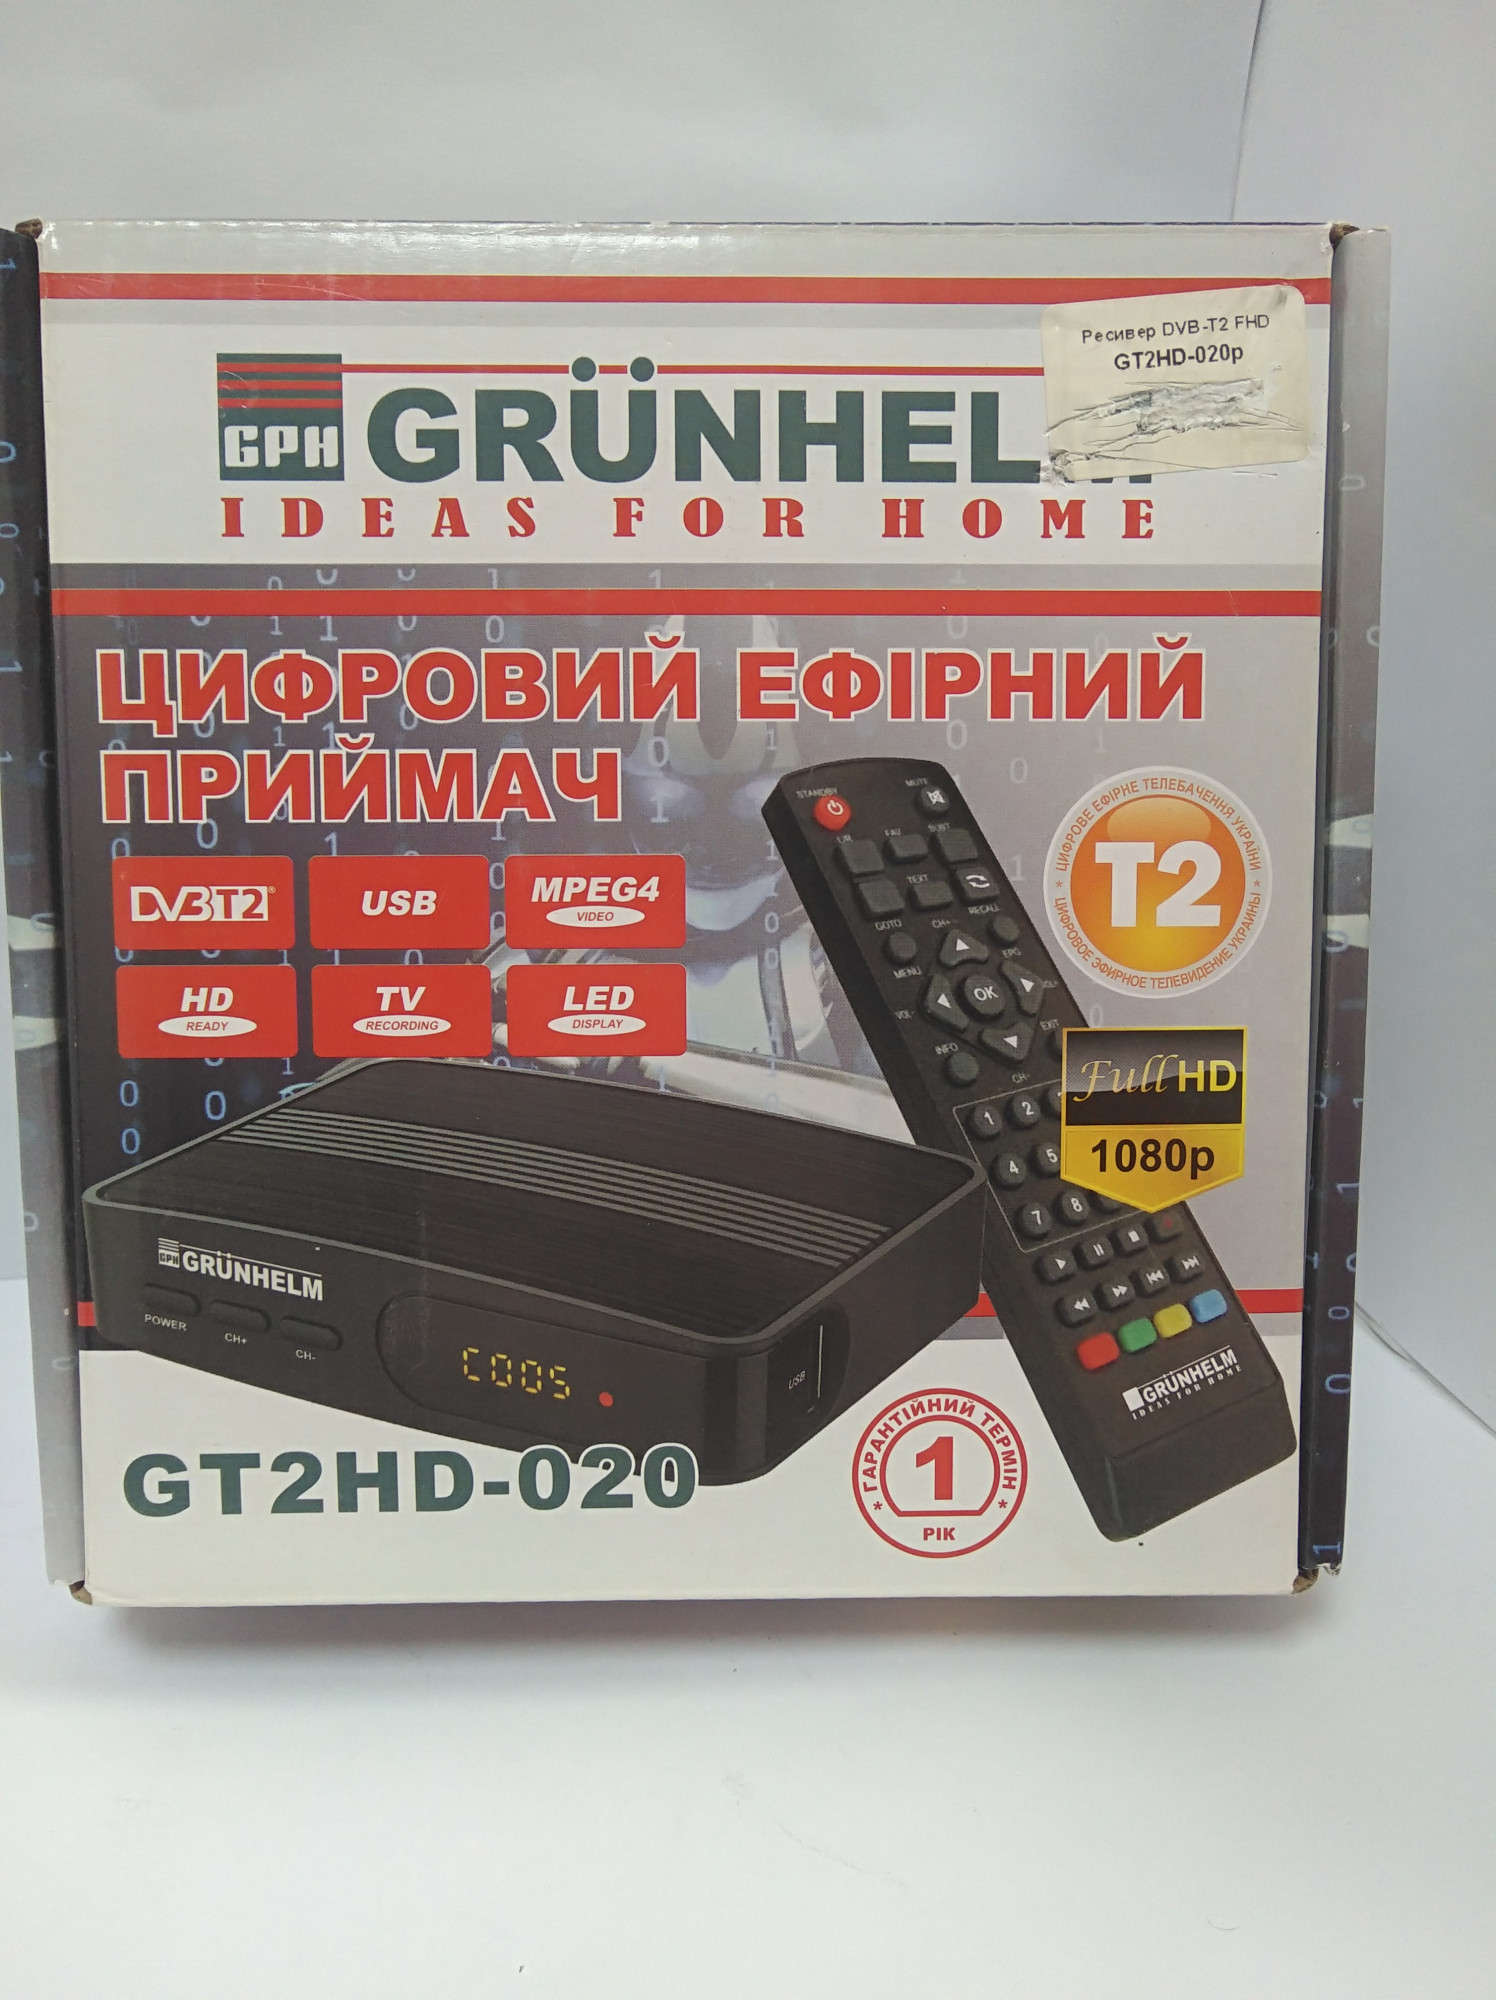 ТВ-тюнер Grunhelm GT2HD-020 2